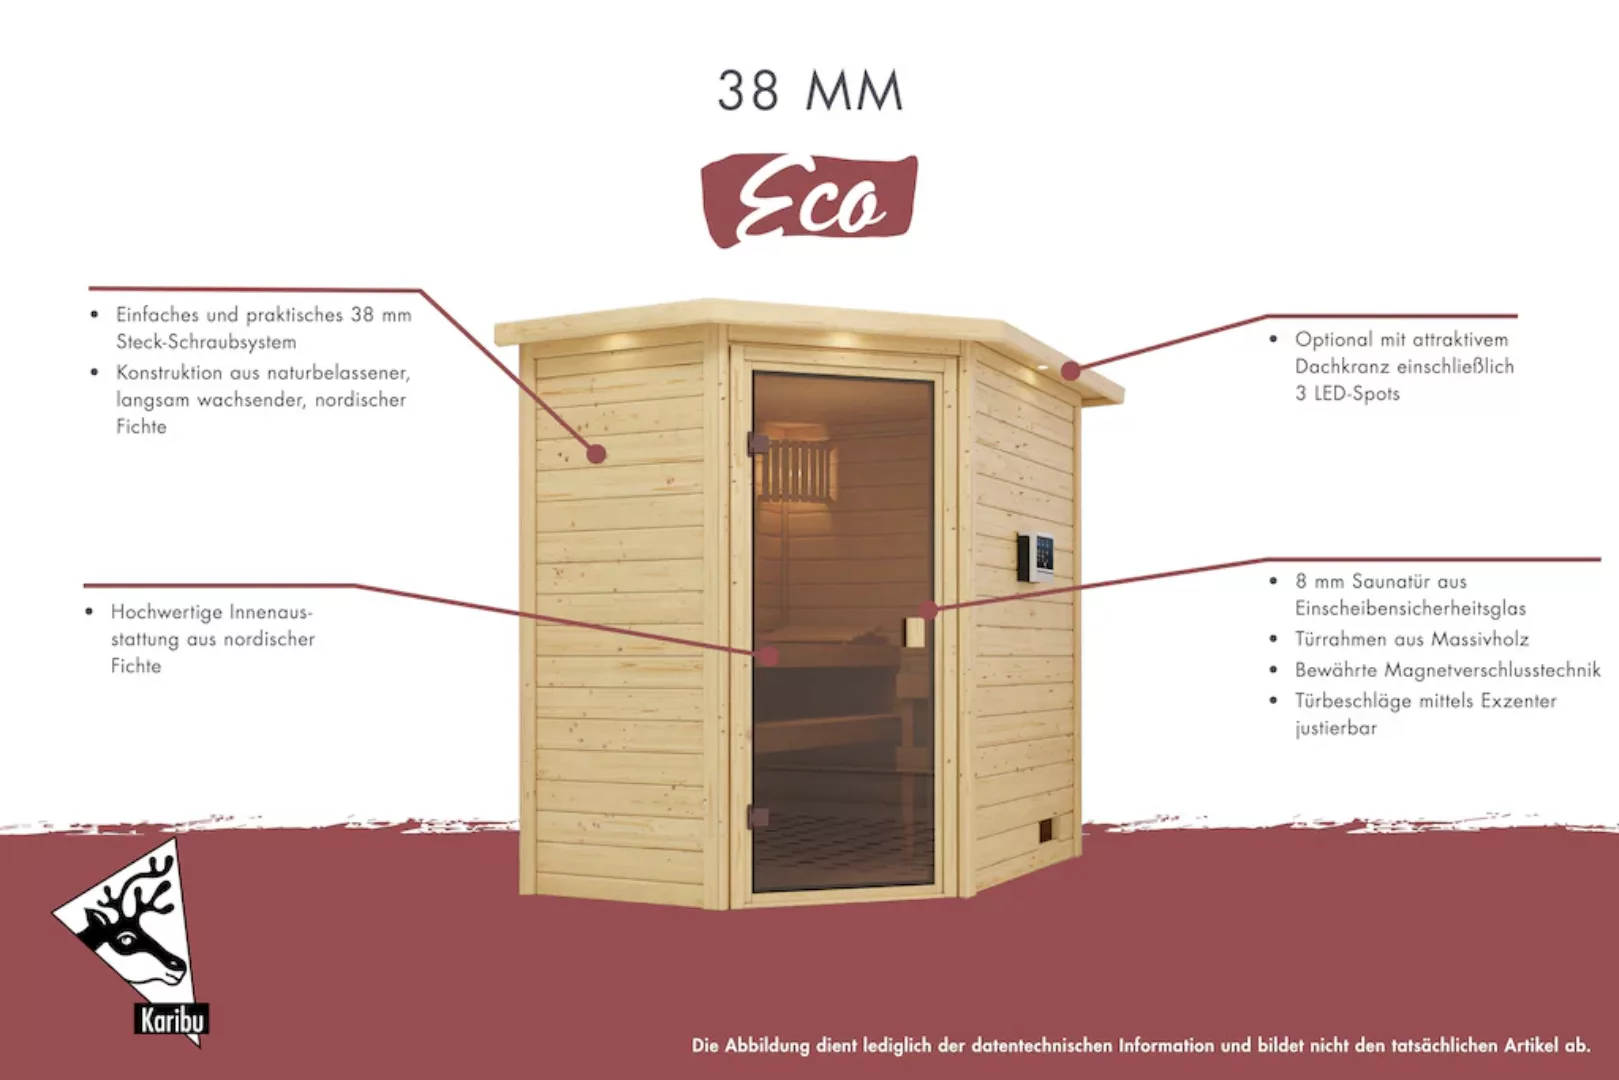 Karibu Sauna »"Leona" mit bronzierter Tür naturbelassen« günstig online kaufen